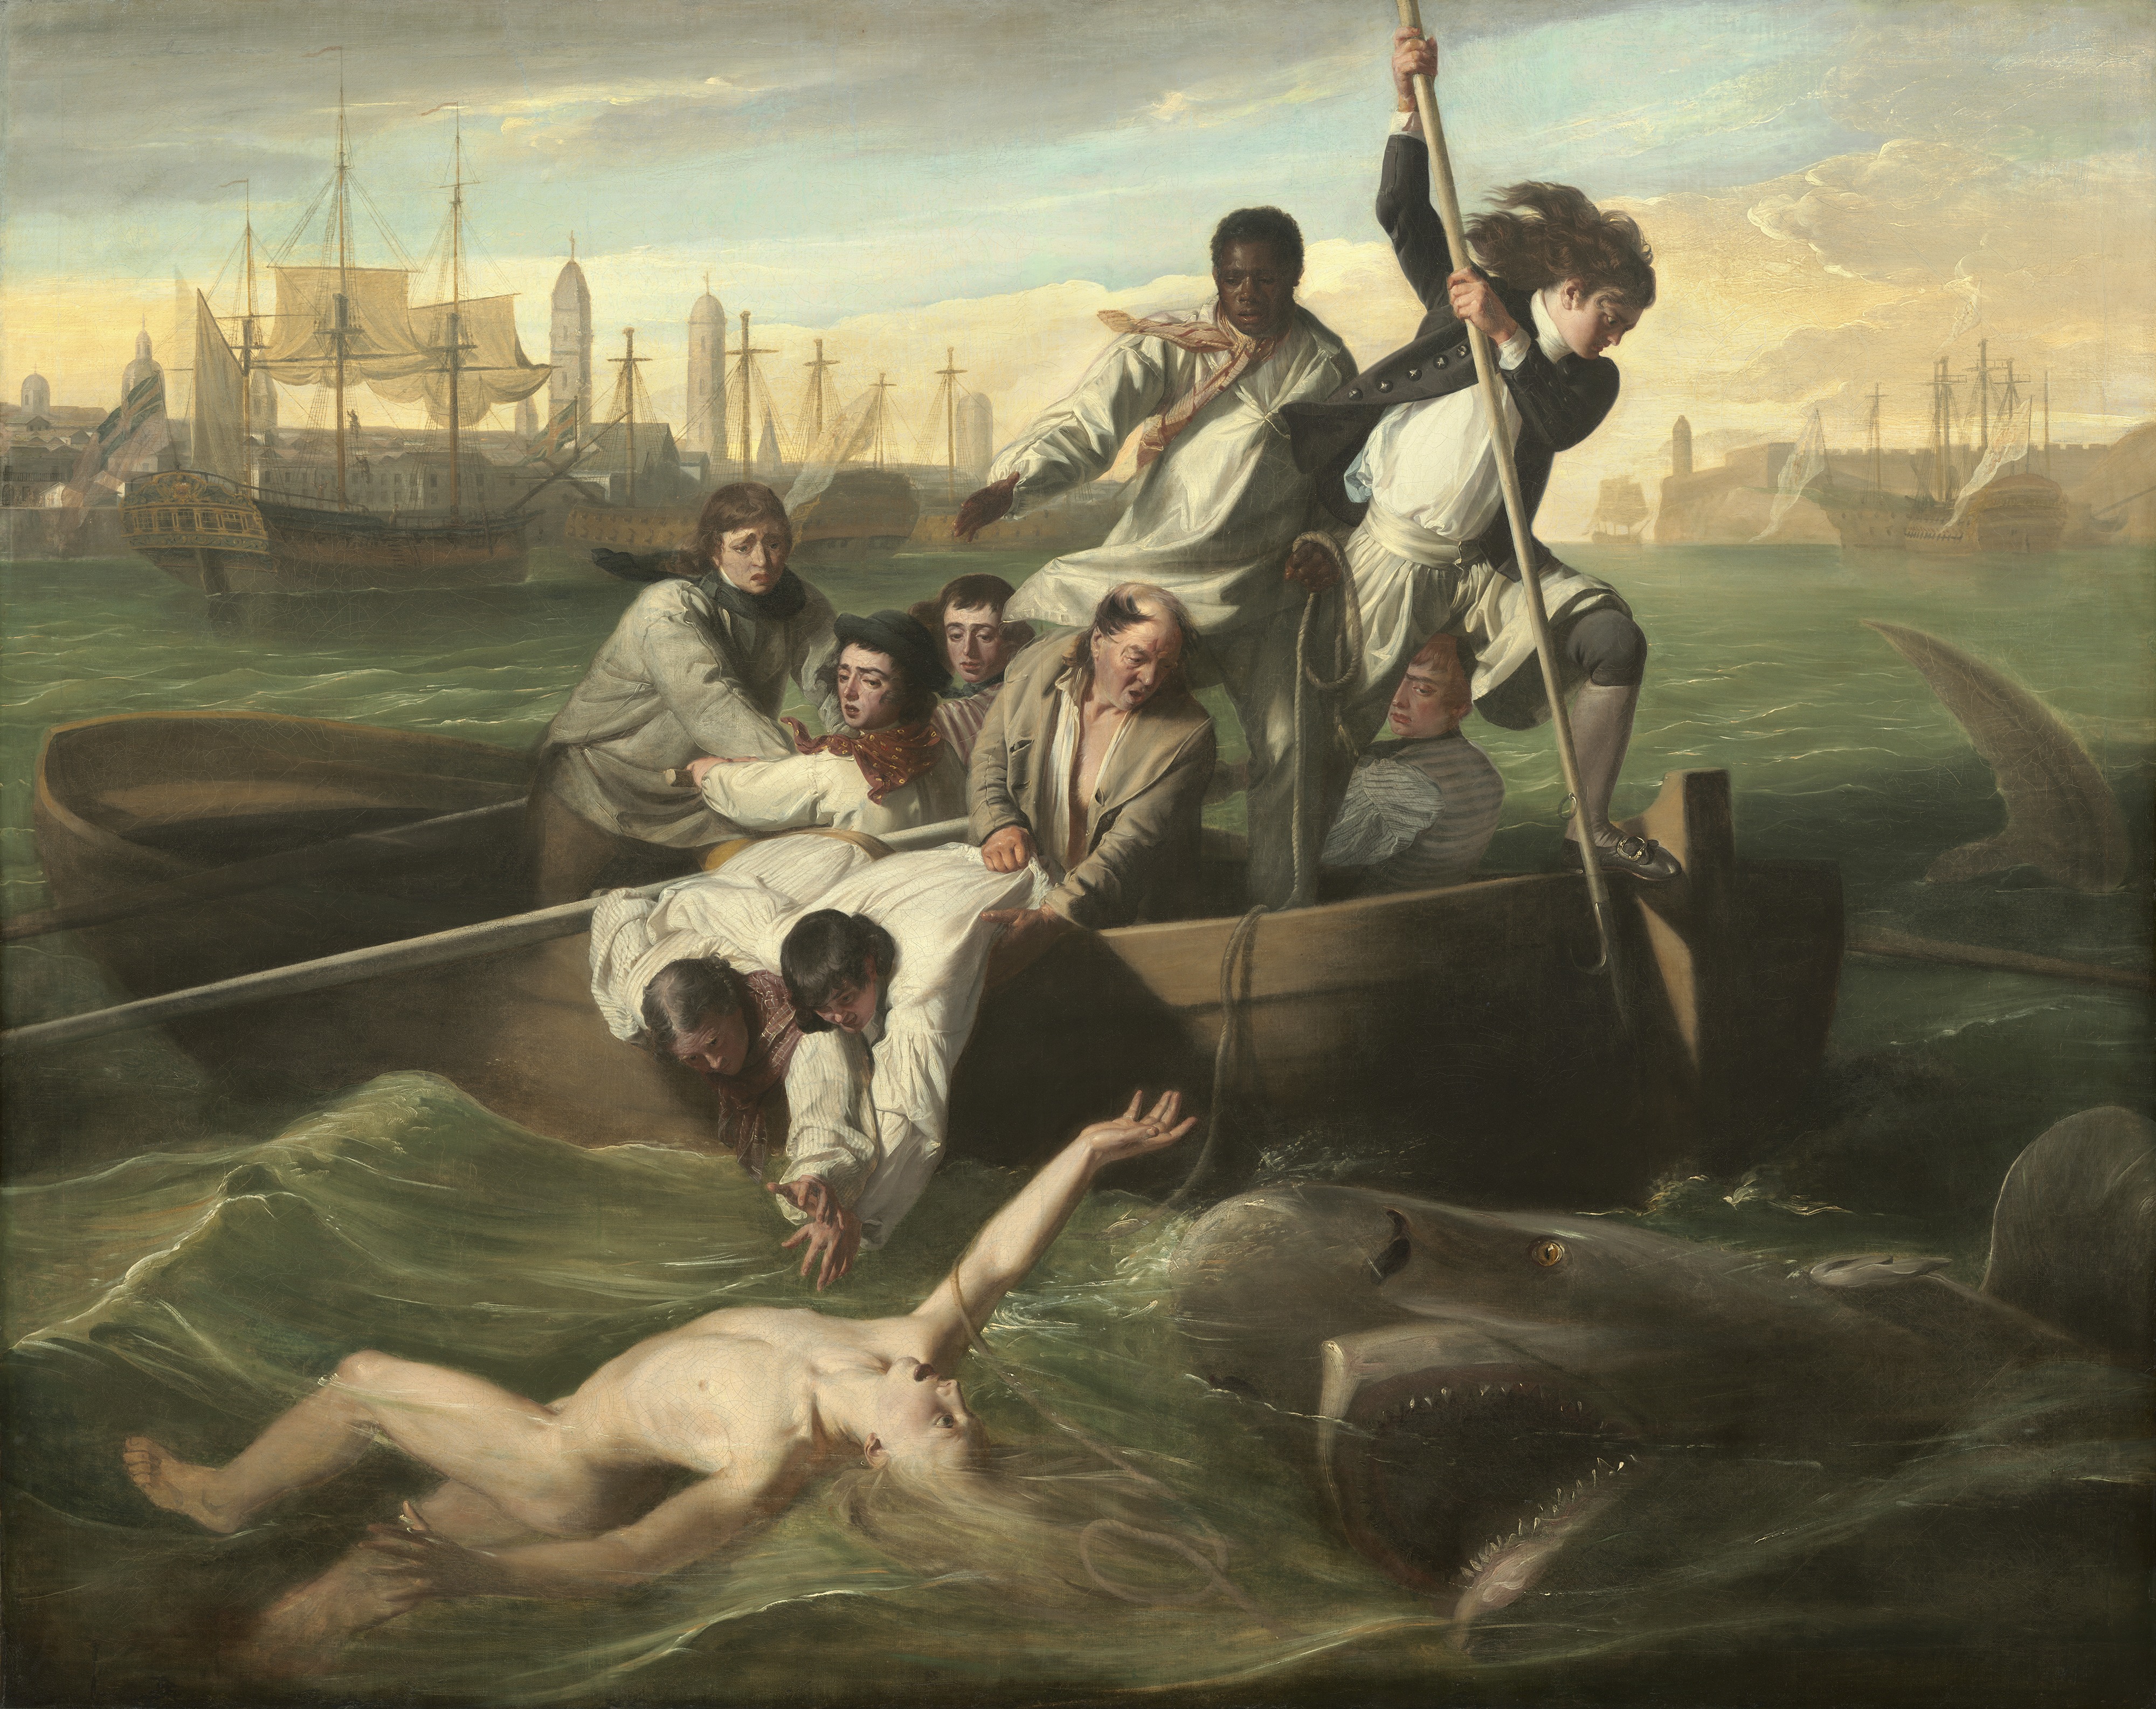 Watson și rechinul by John Singleton Copley - 1778 